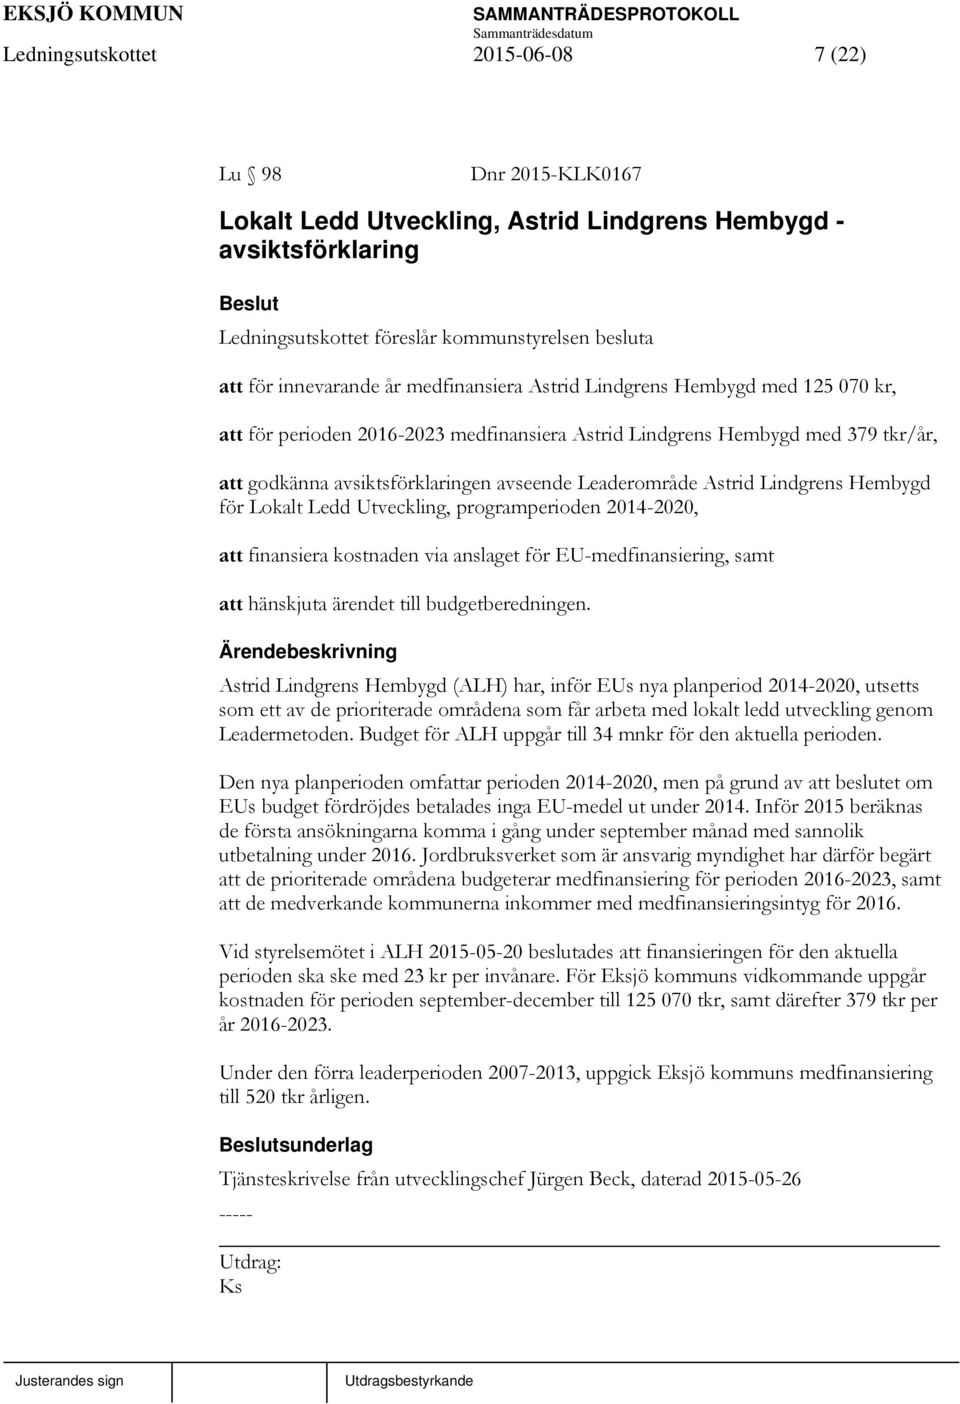 Astrid Lindgrens Hembygd för Lokalt Ledd Utveckling, programperioden 2014-2020, att finansiera kostnaden via anslaget för EU-medfinansiering, samt att hänskjuta ärendet till budgetberedningen.